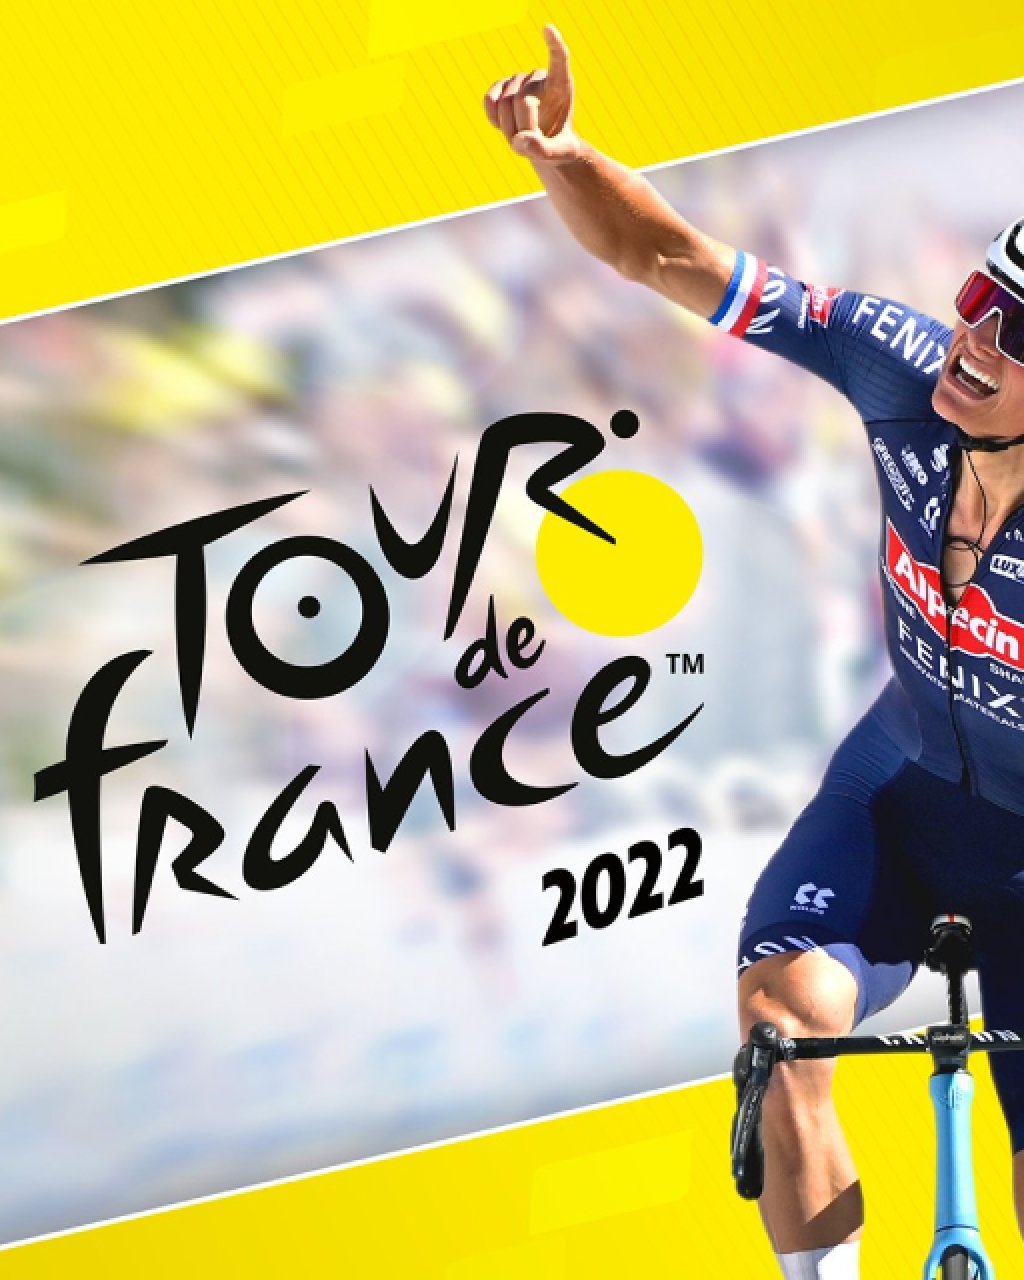 Tour de France 2022 (DIGITAL)